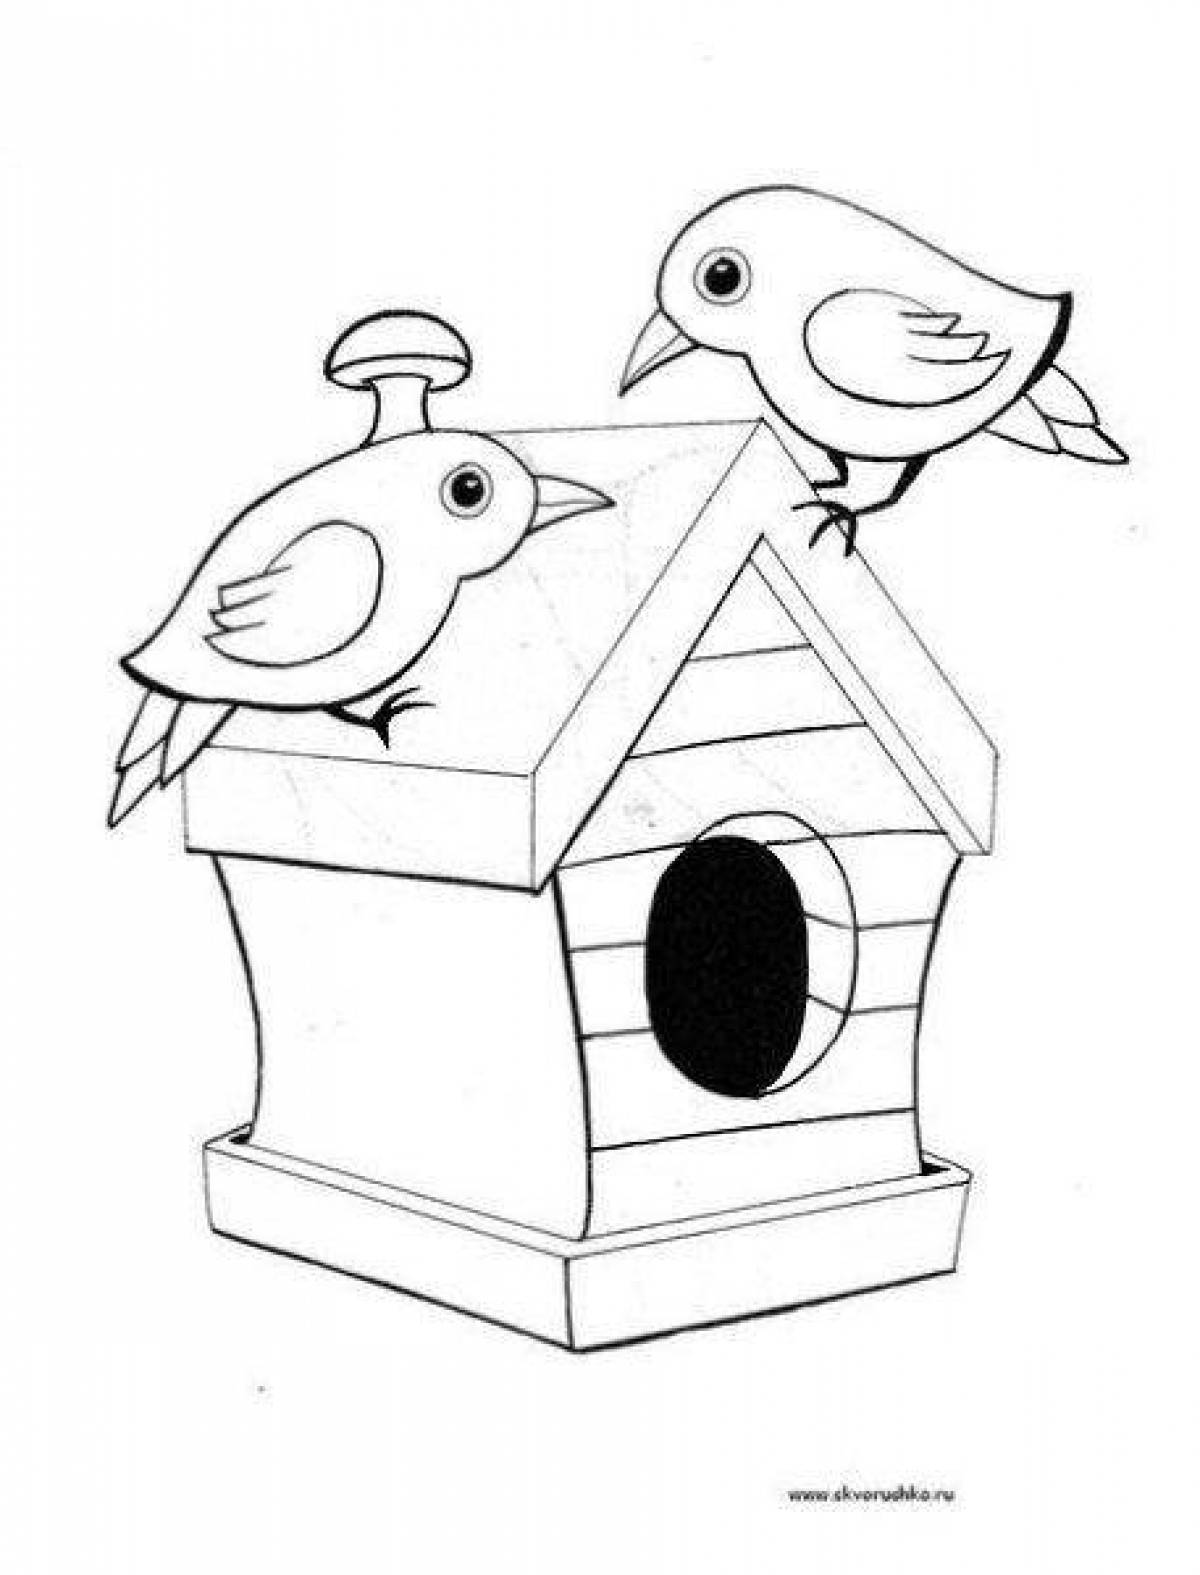 Увлекательная раскраска «кормушка для птиц» для детей